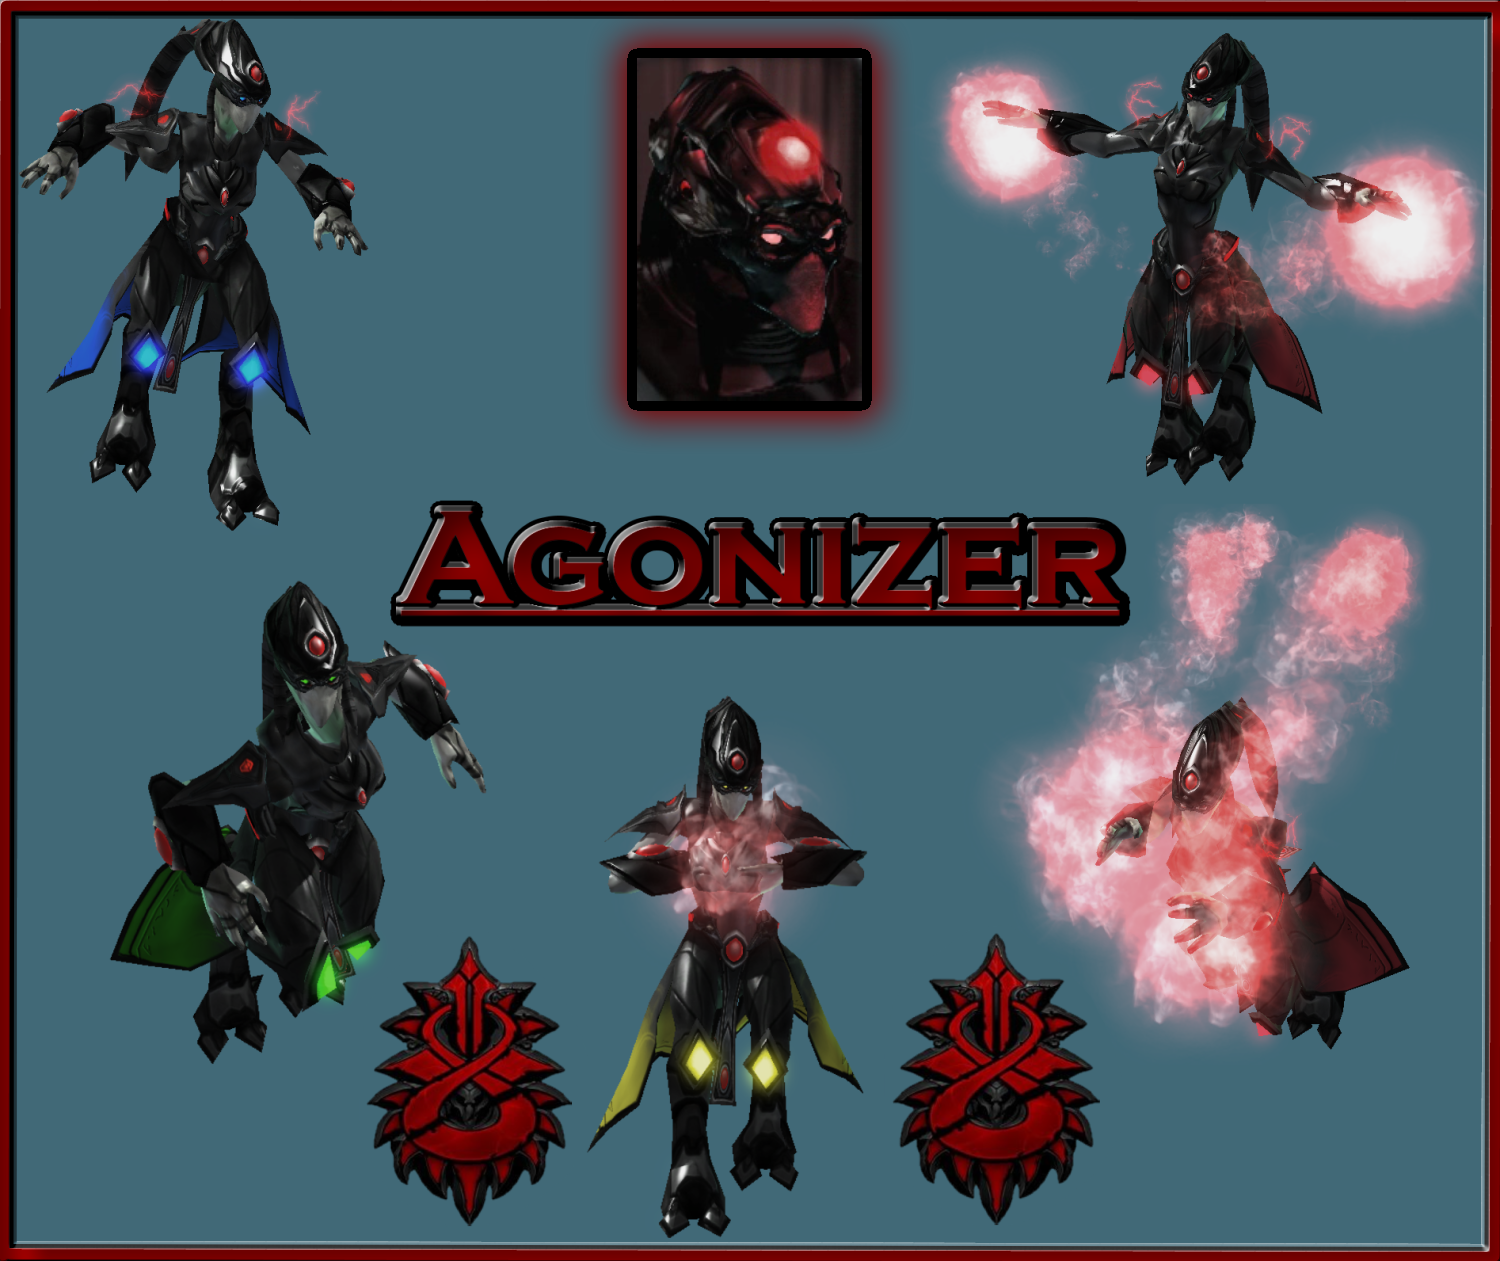 Agonizer